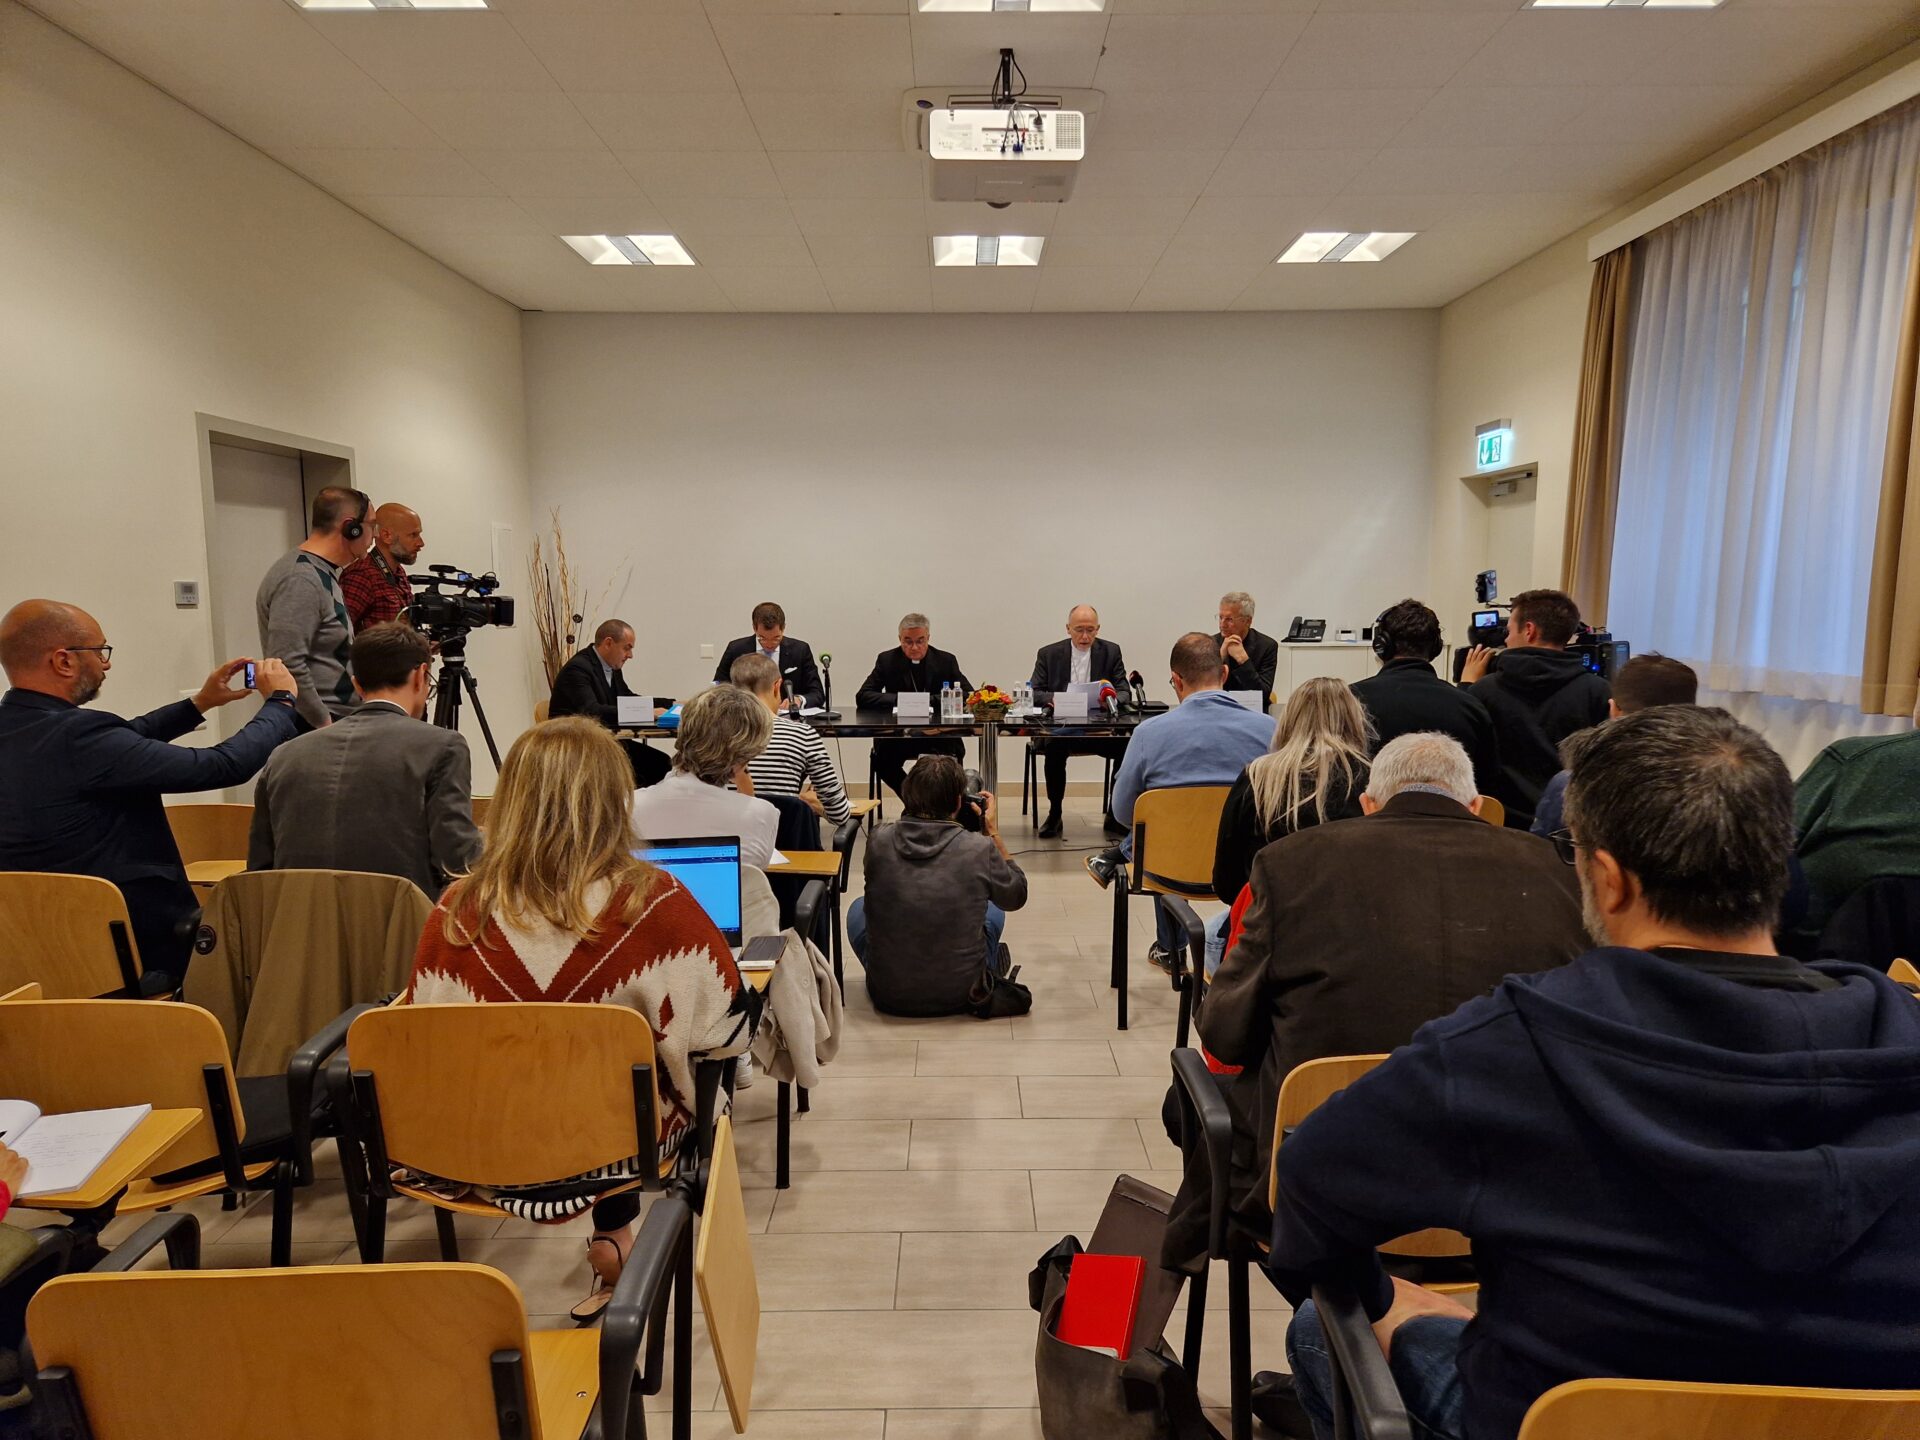 La conferenza stampa svoltasi lo scorso 10 ottobre nella quale si annunciavano le dimissioni di mons. Lazzeri.